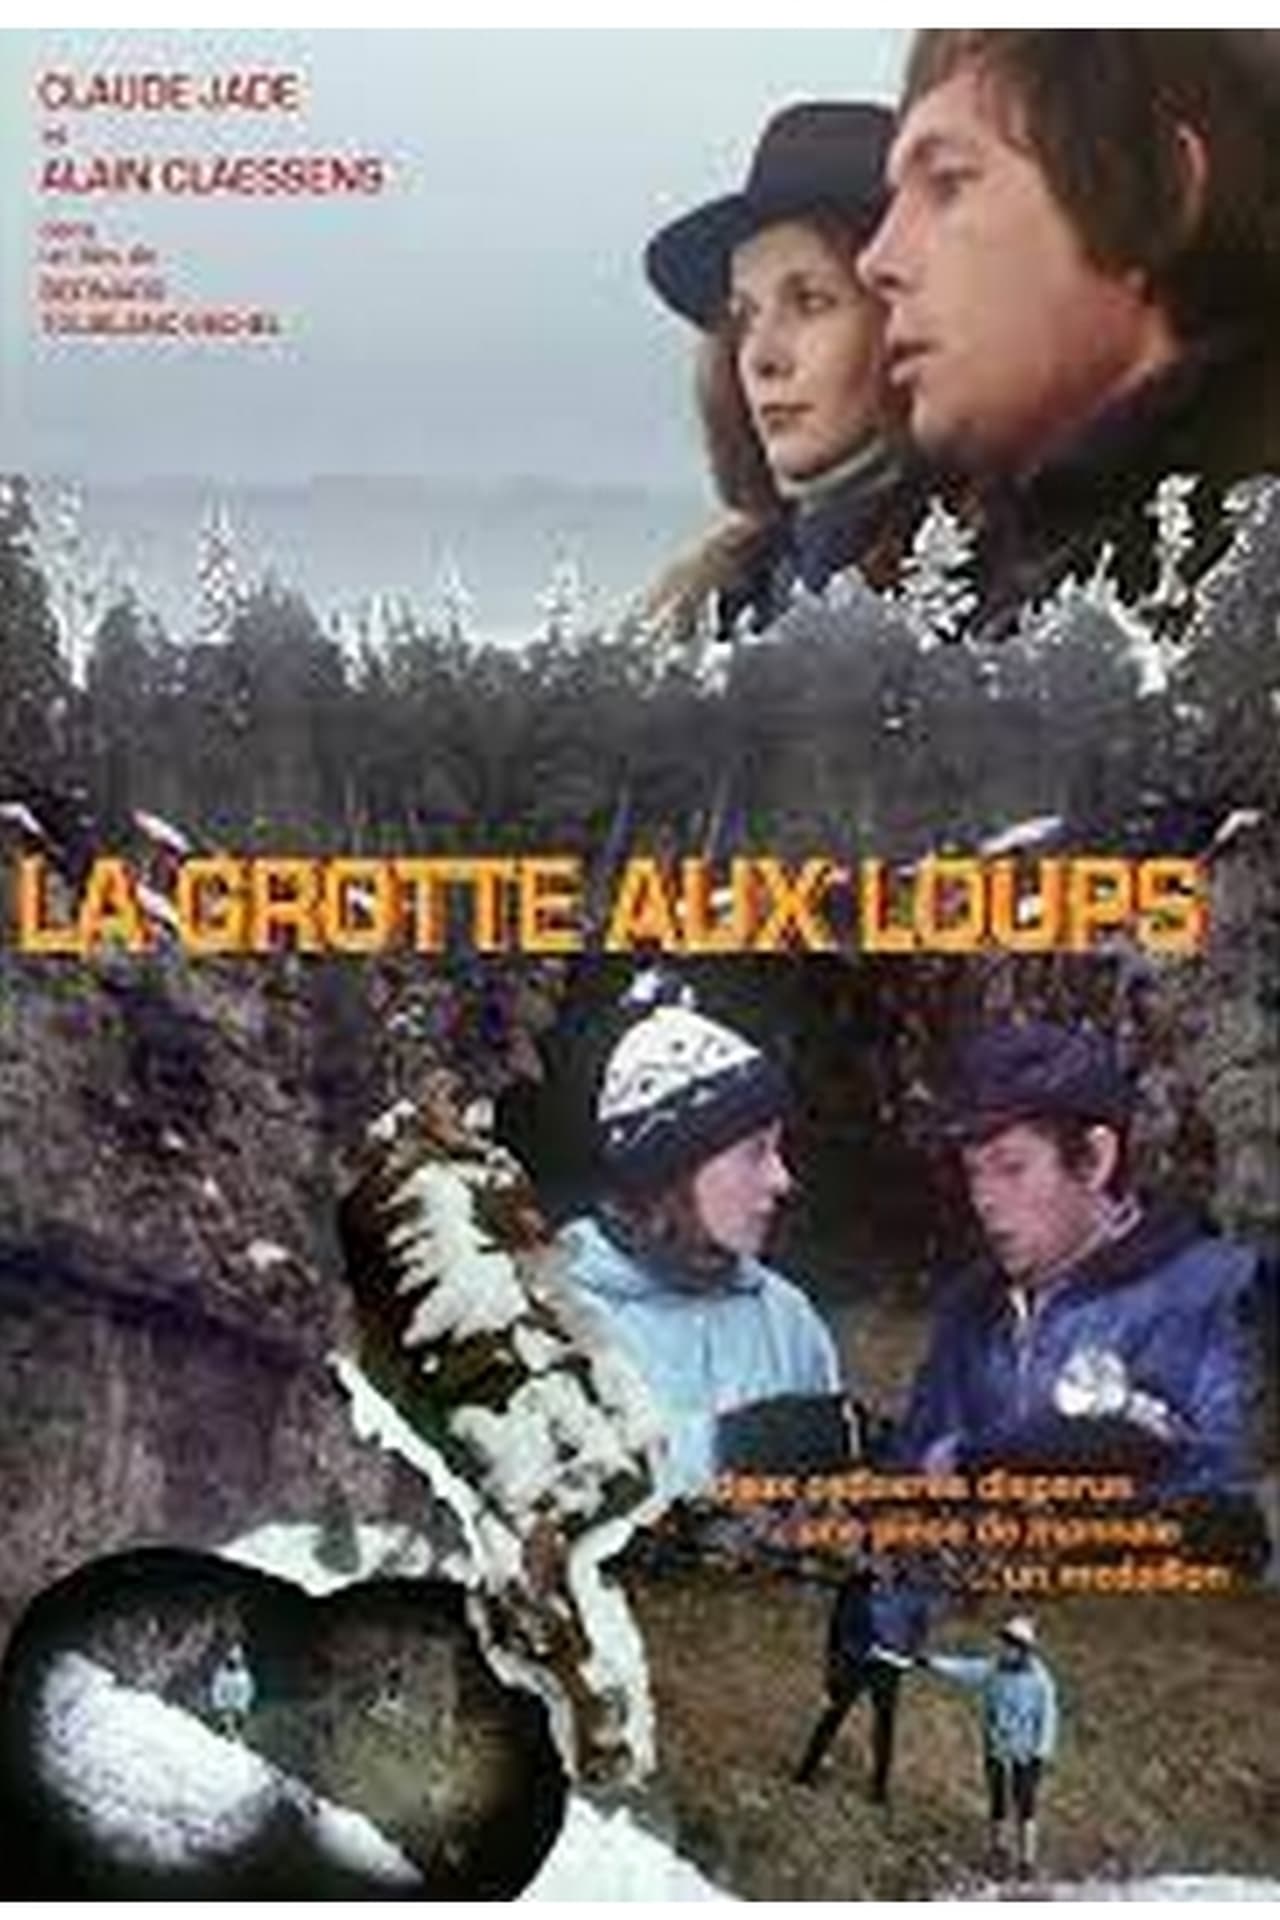 La Grotte aux loups (1980)